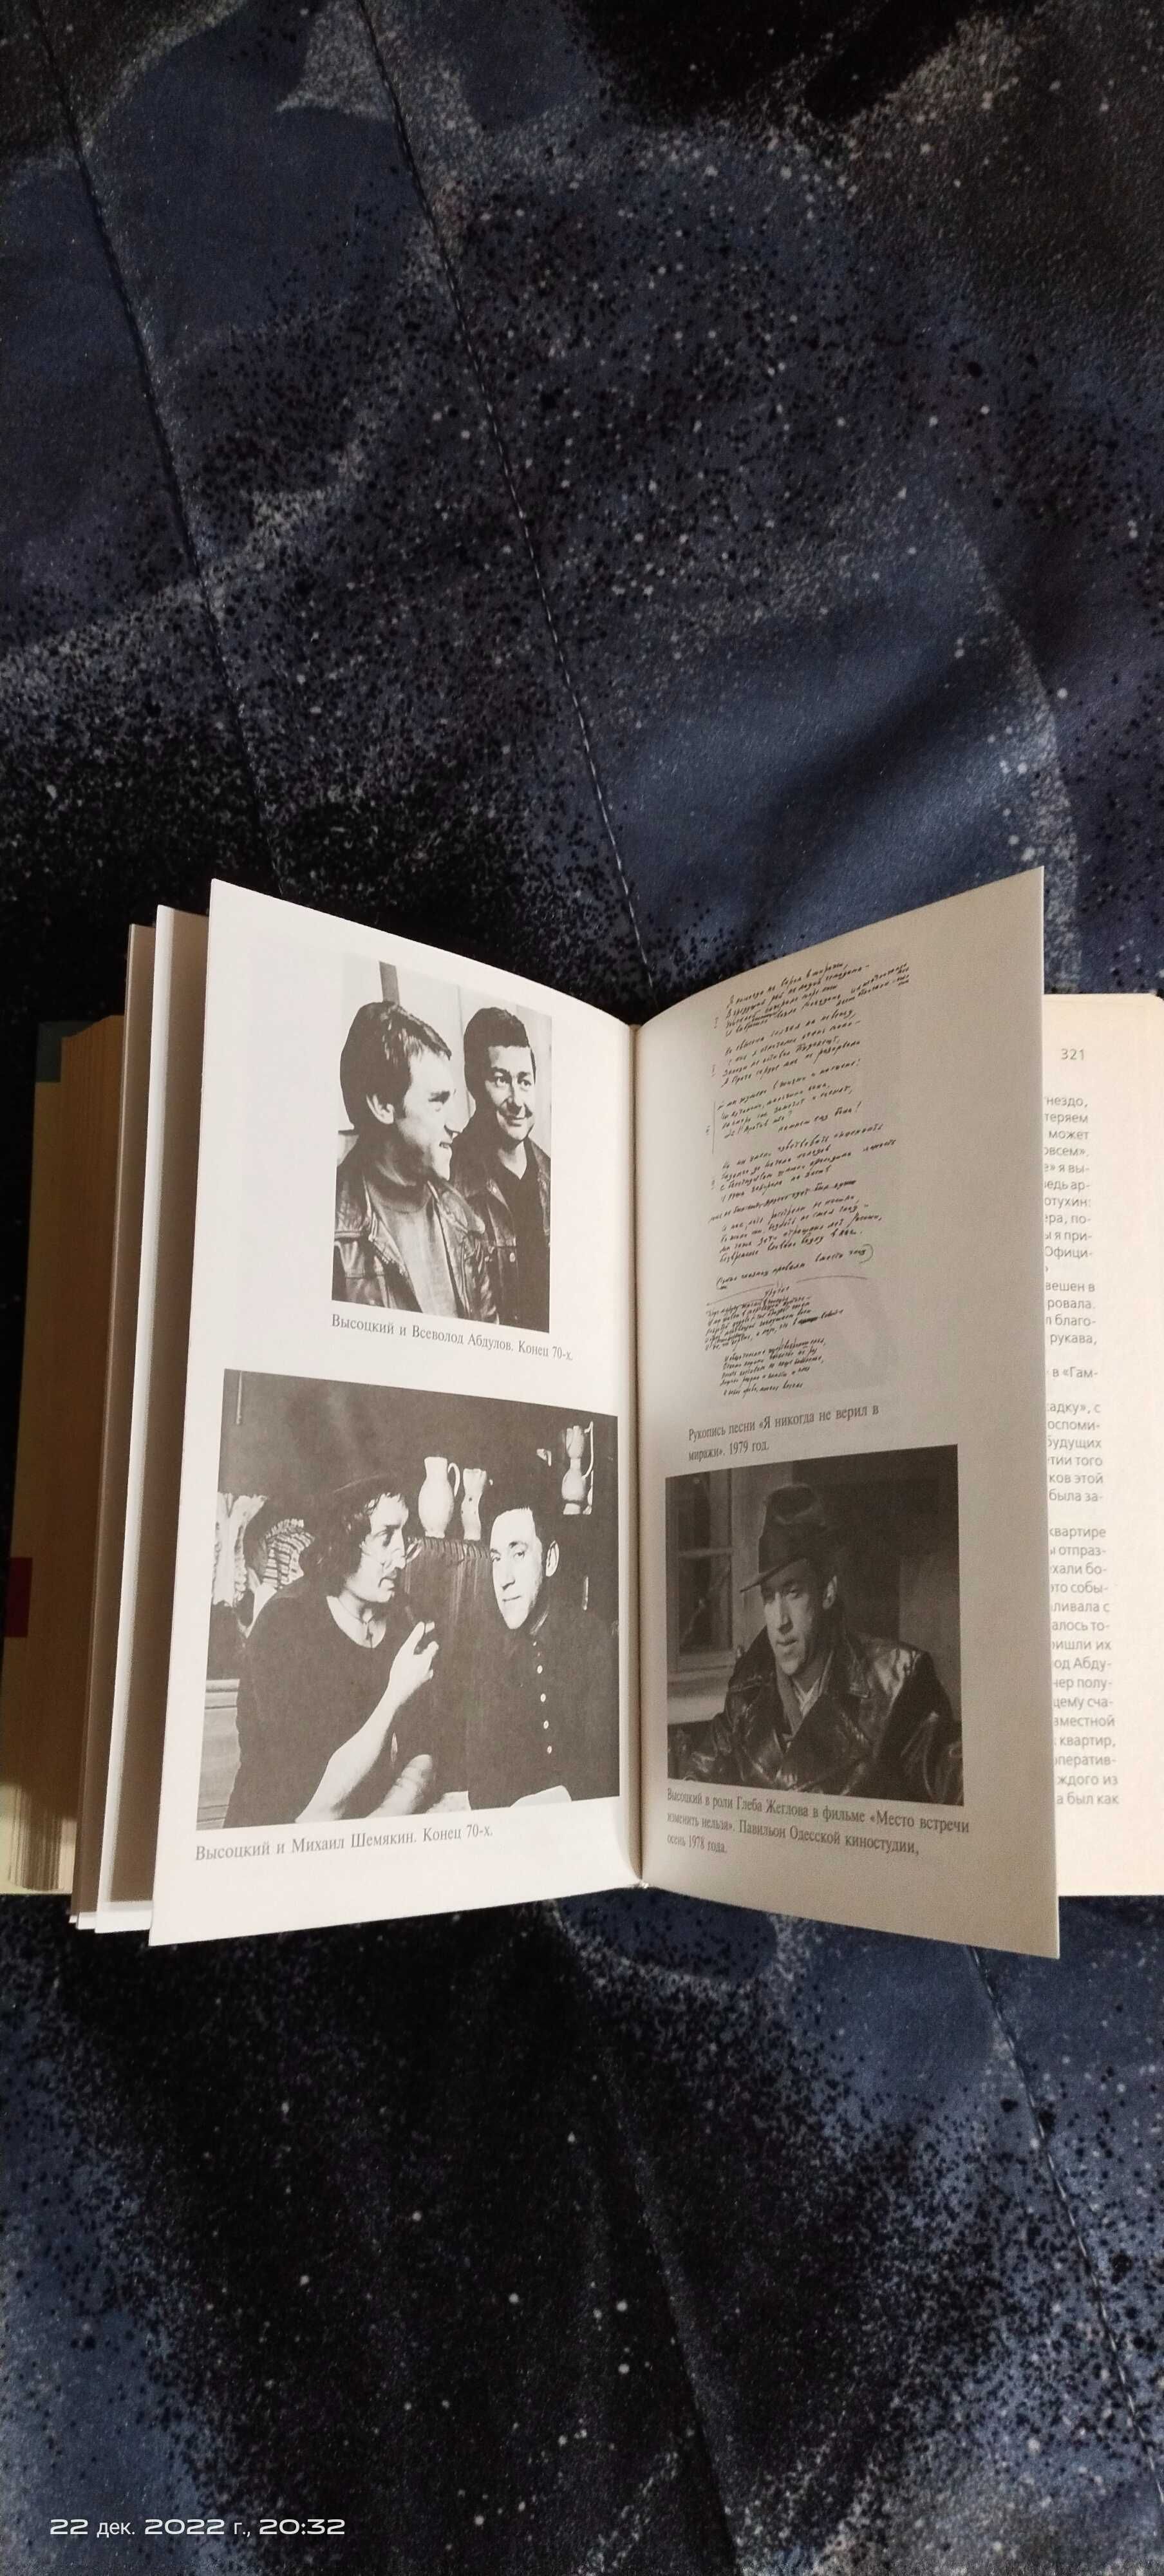 Книга о Высоцком + подарок журнал о нём " Экран " 88 год .